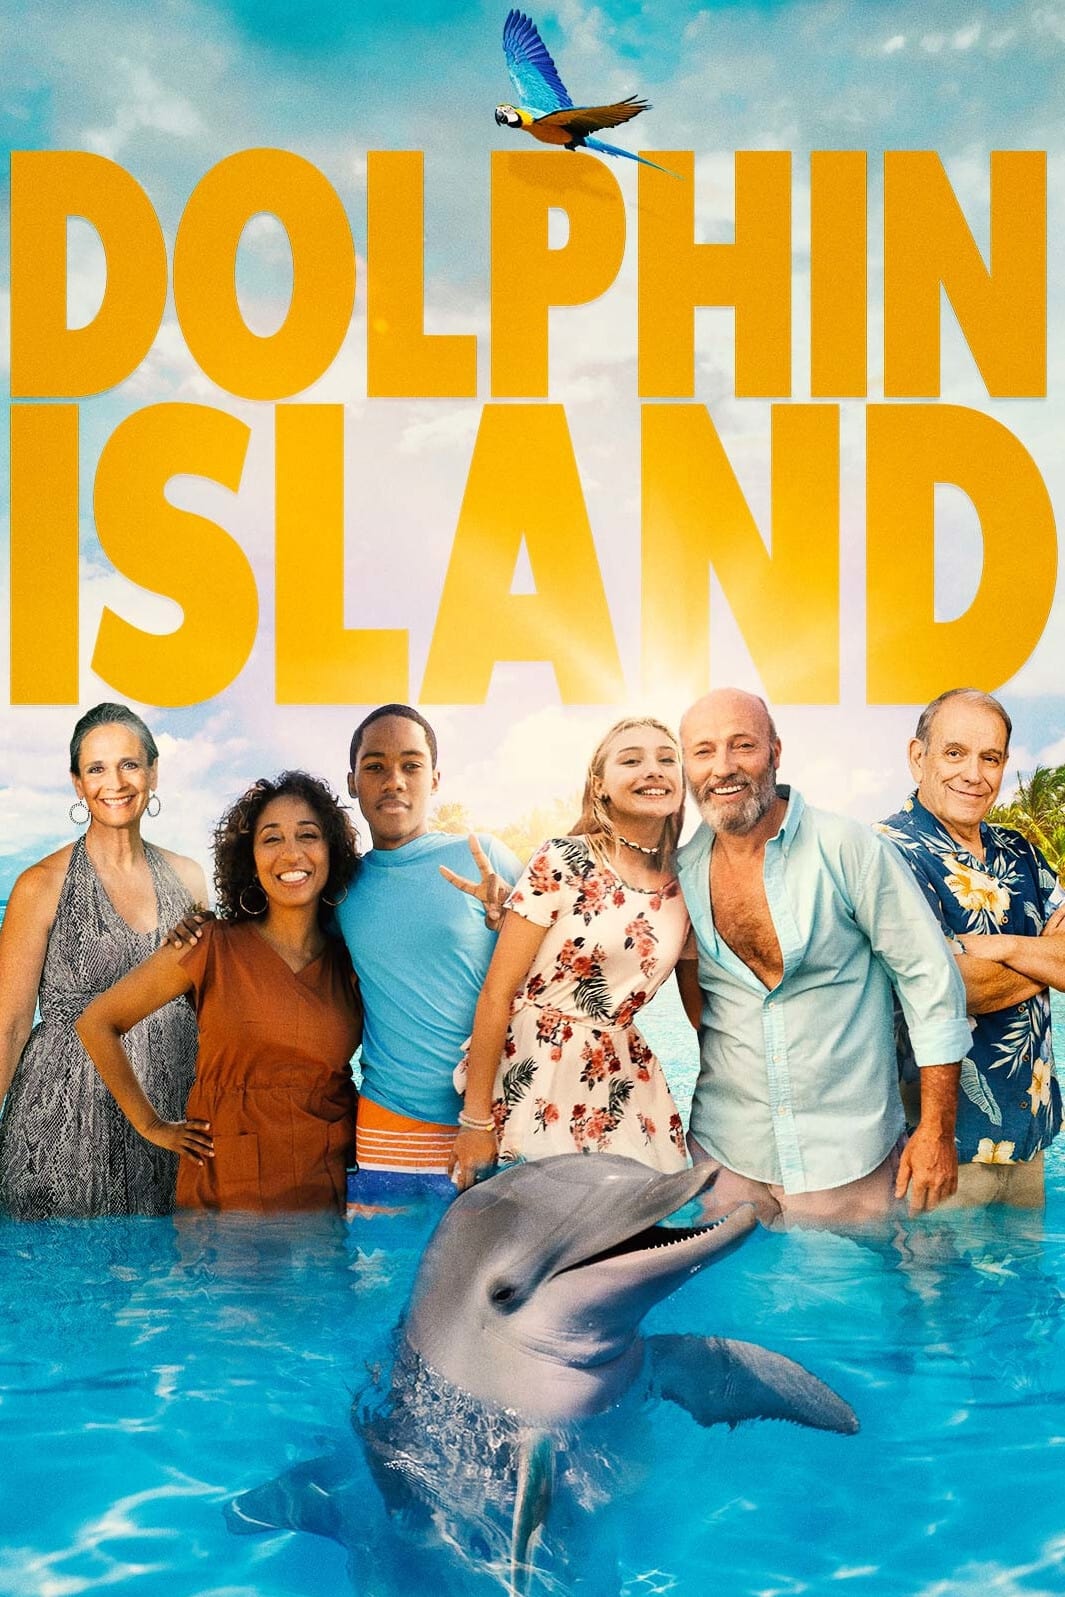 ดูหนังออนไลน์ Dolphin Island ผจญภัยโลมาเพื่อนรัก